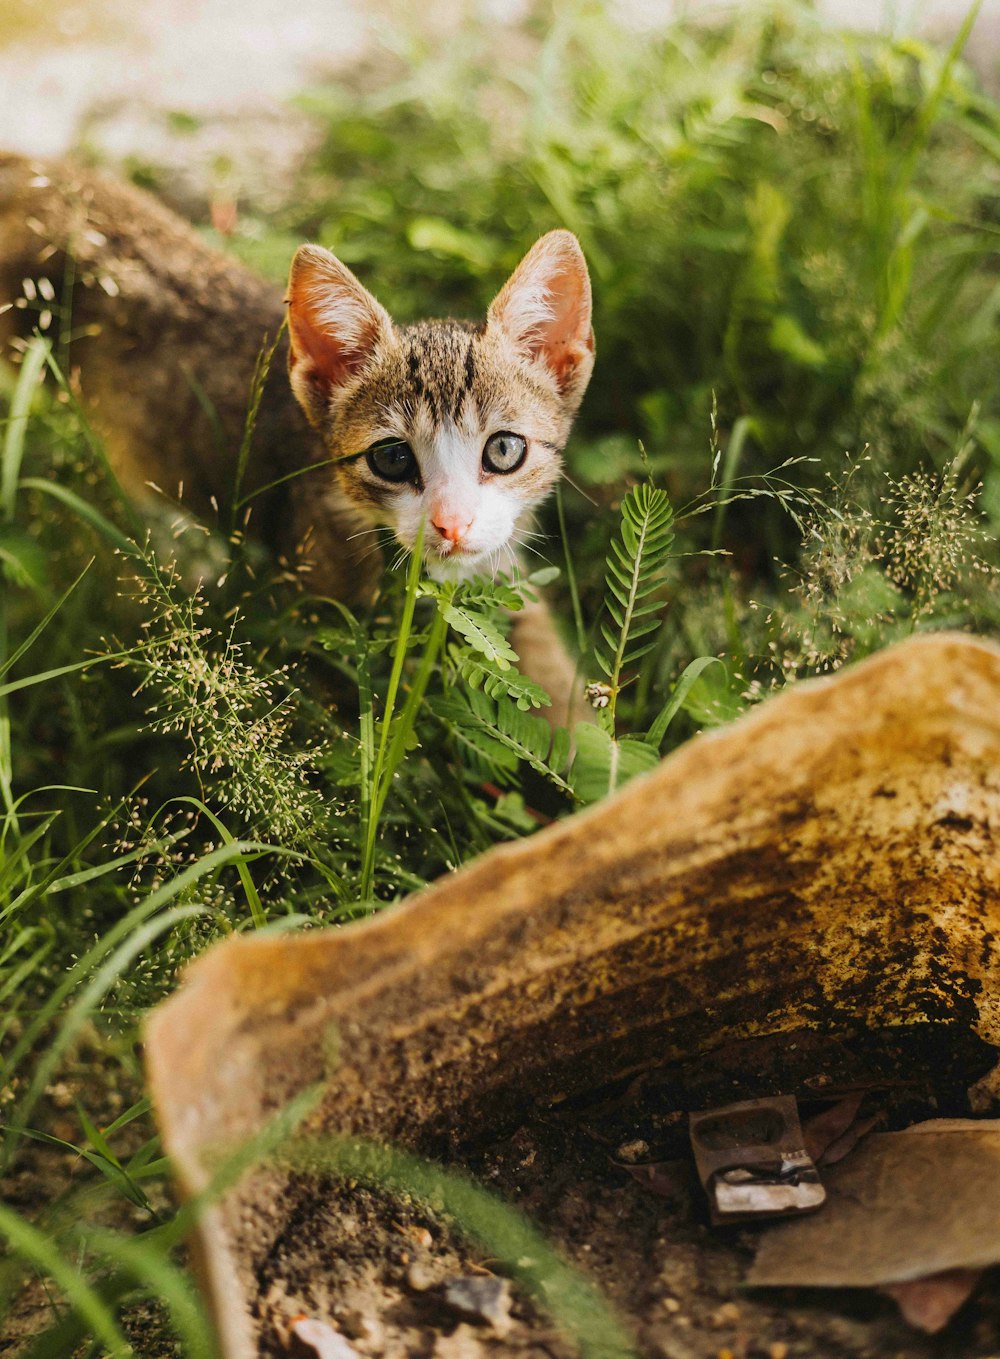 a small kitten walking through a lush green forest